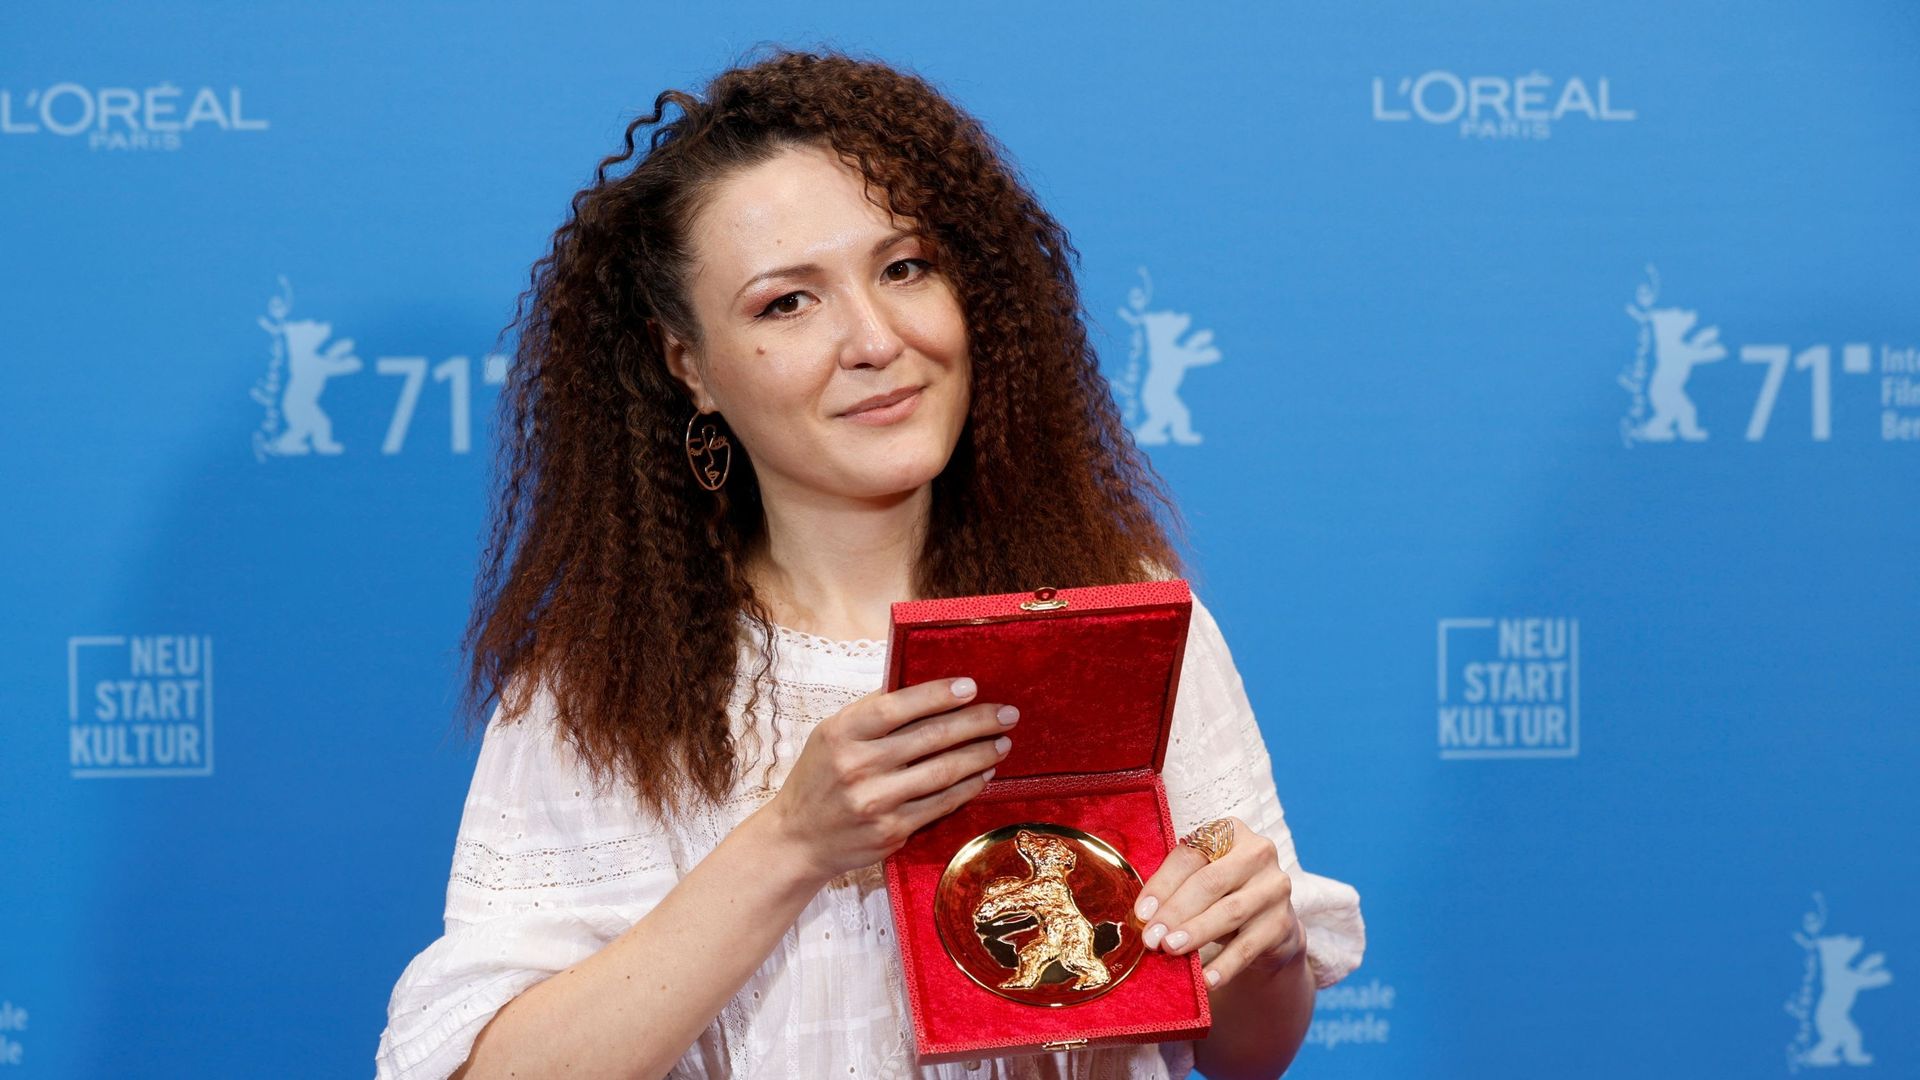 La réalisatrice Olga Lucovnicova, lauréate de l’Ours d’or du meilleur court métrage, pose à la 71e Berlinale, Allemagne, le 13 juin 2021.